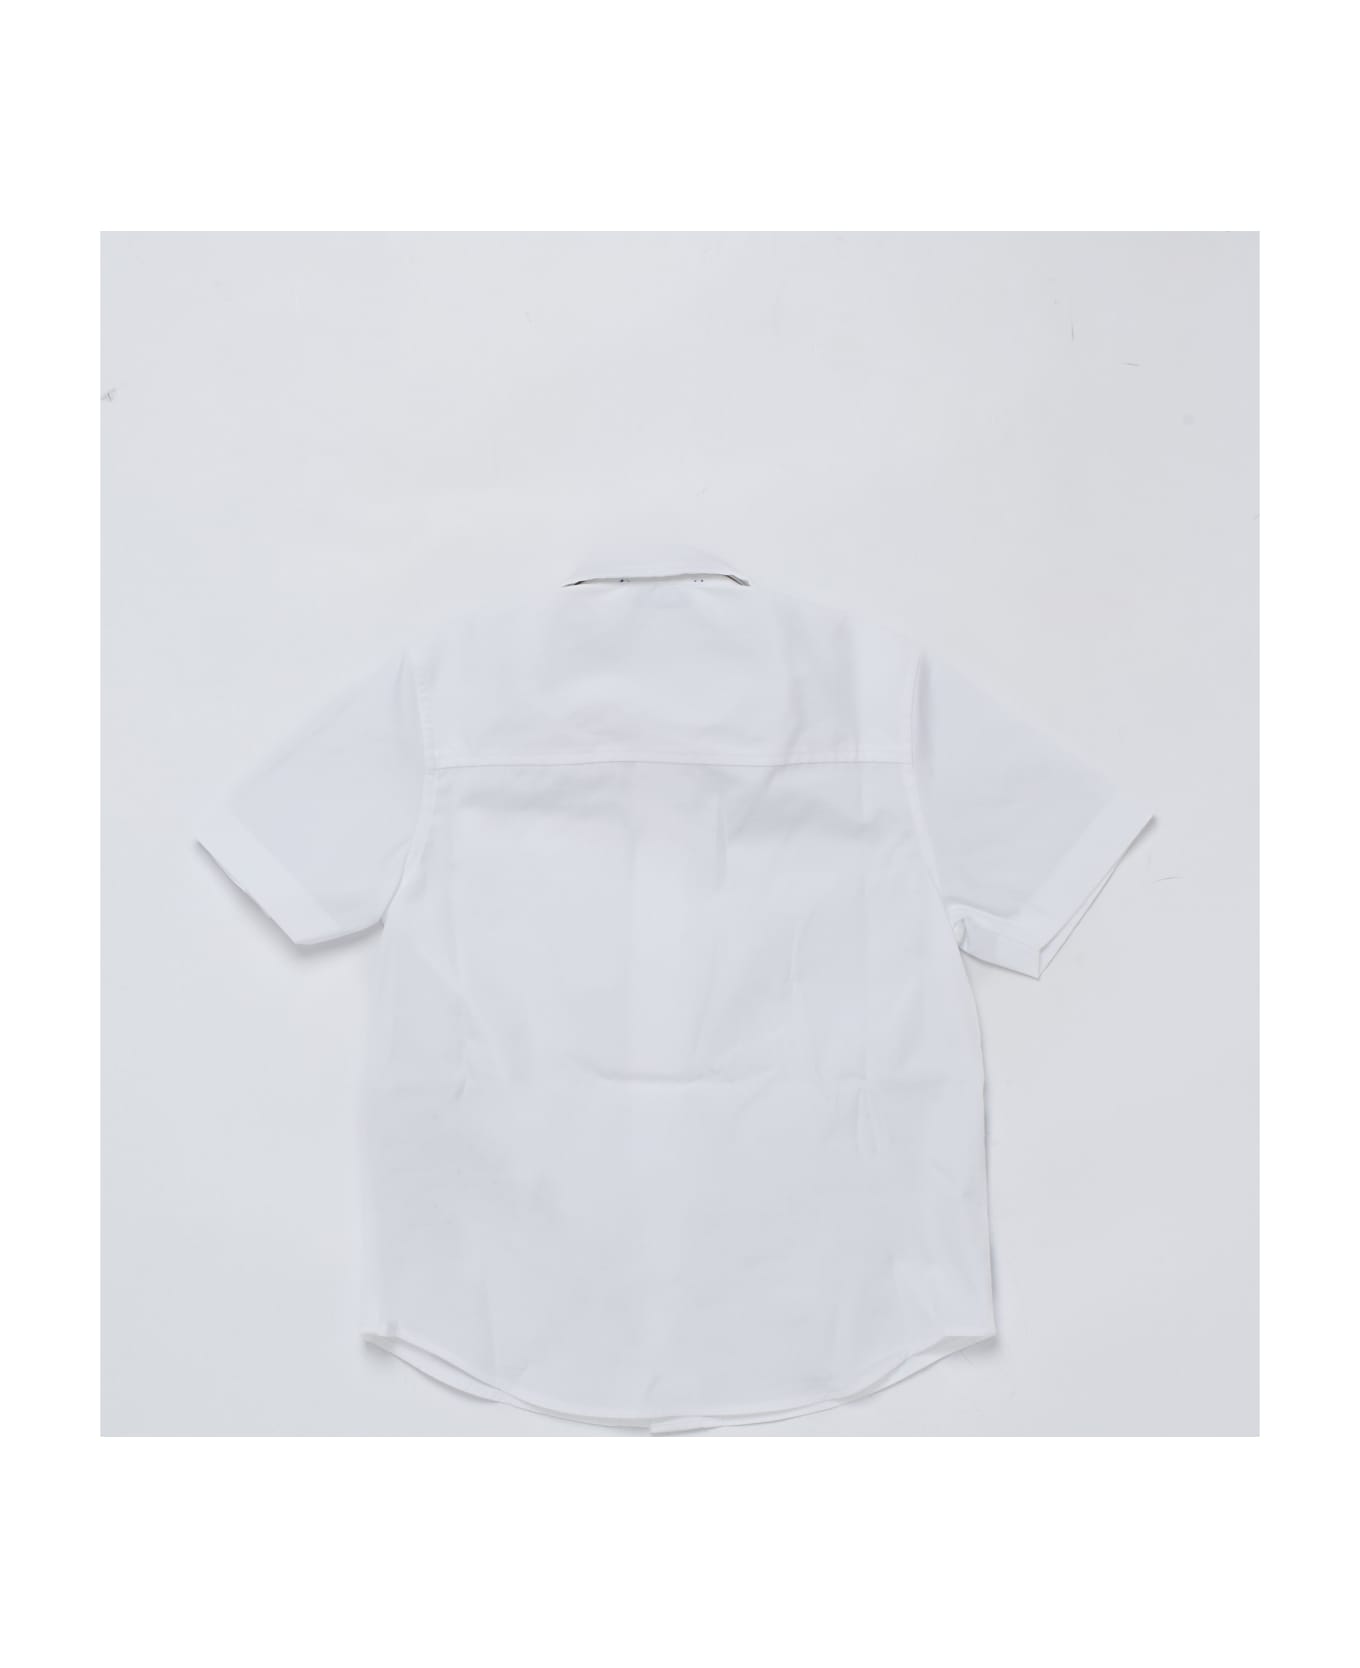 Burberry Owen Shirt Shirt - BIANCO